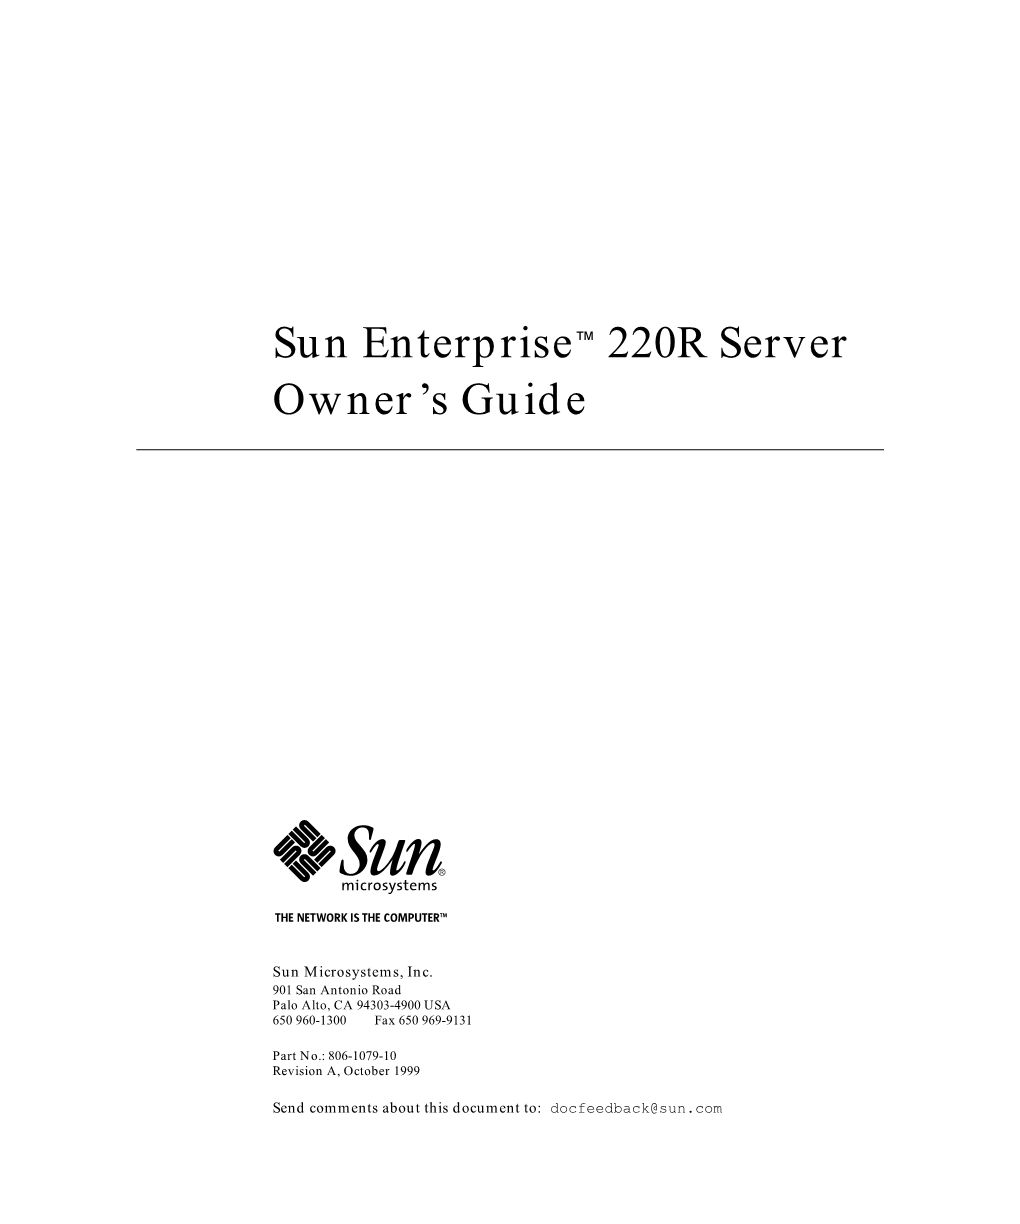 Sun Enterprise 220R Server Owner's Guide